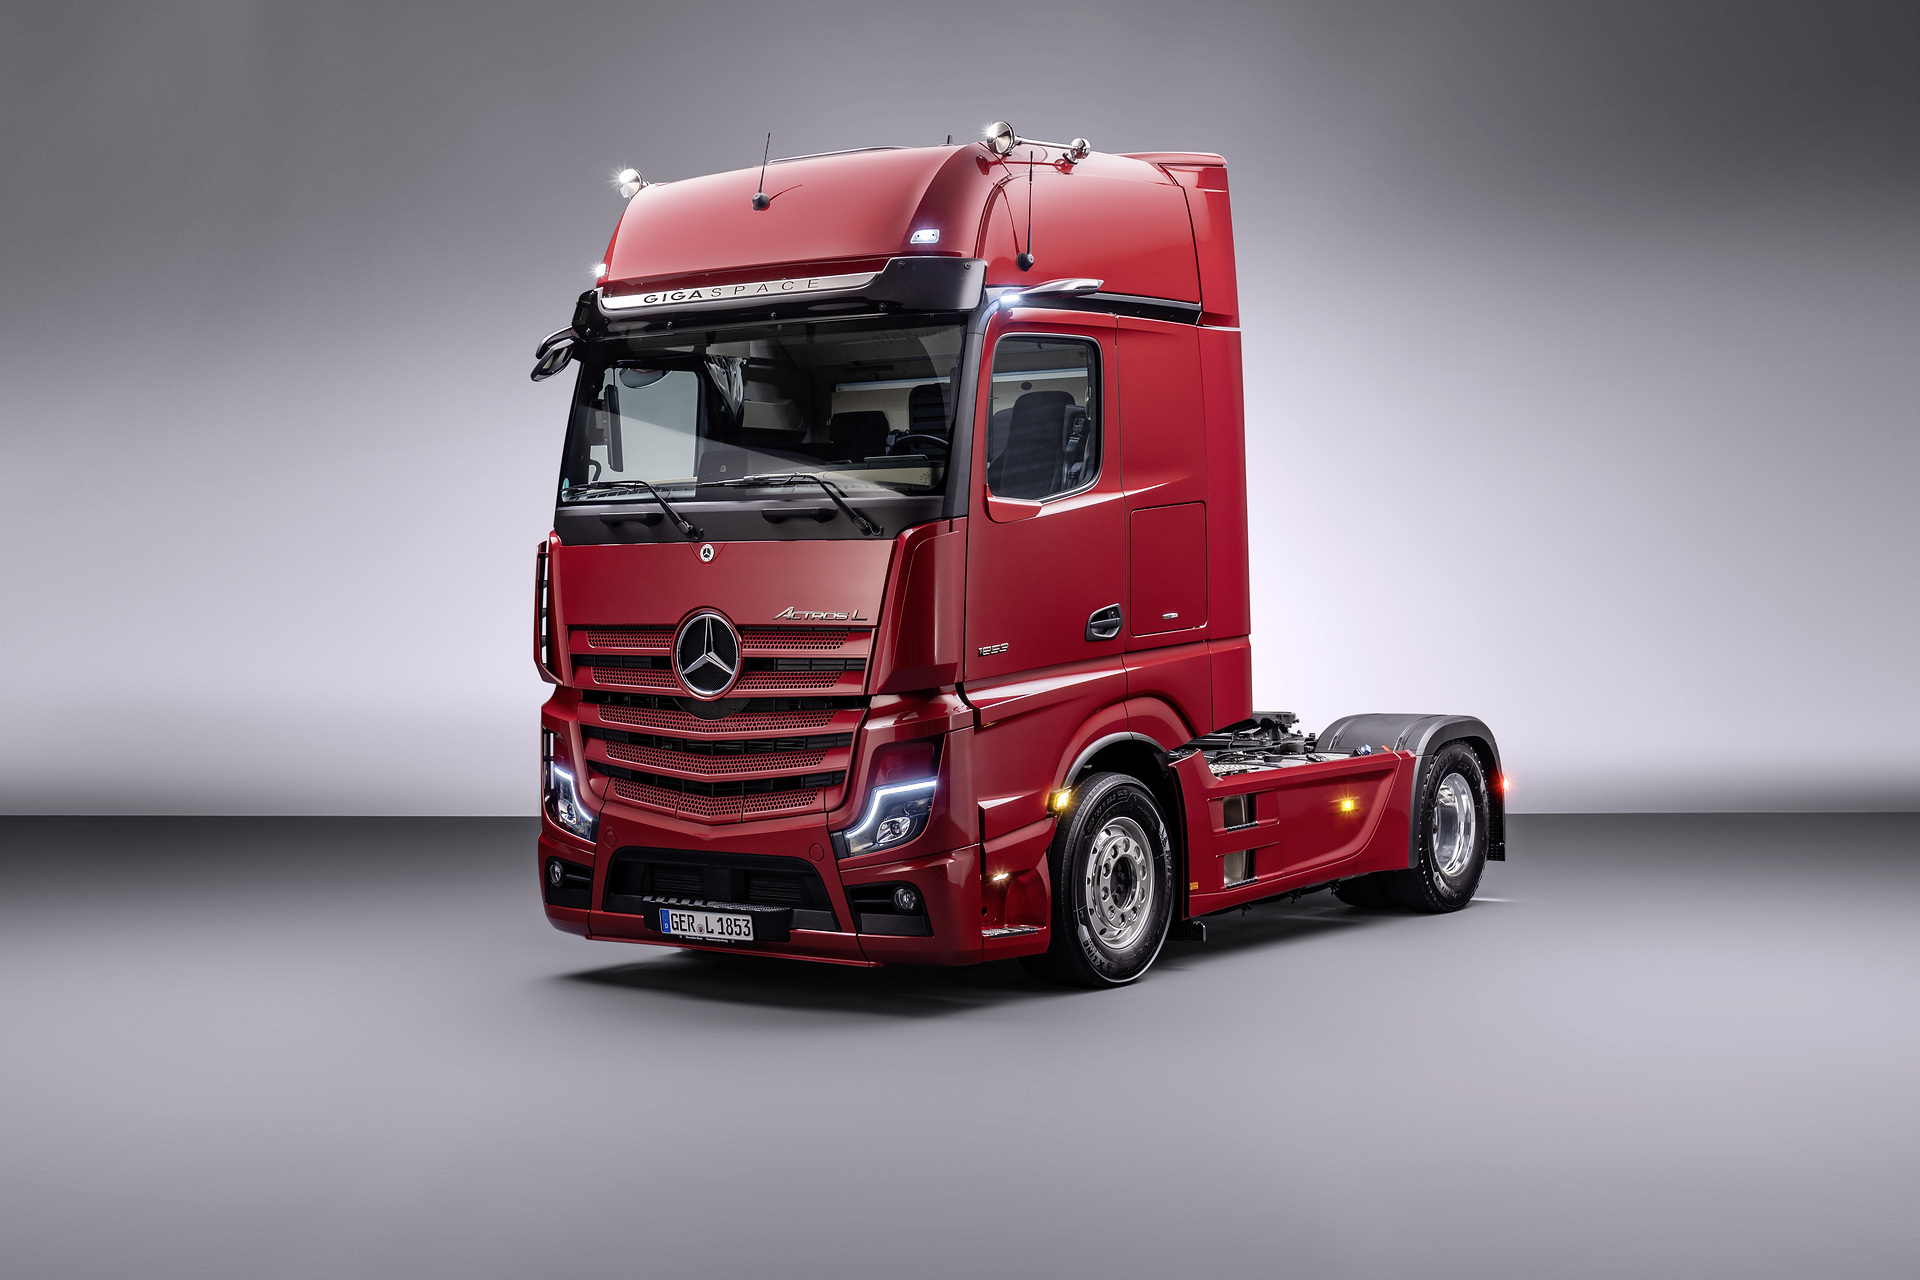 Daimler Truck Financial Services startet in Frankreich